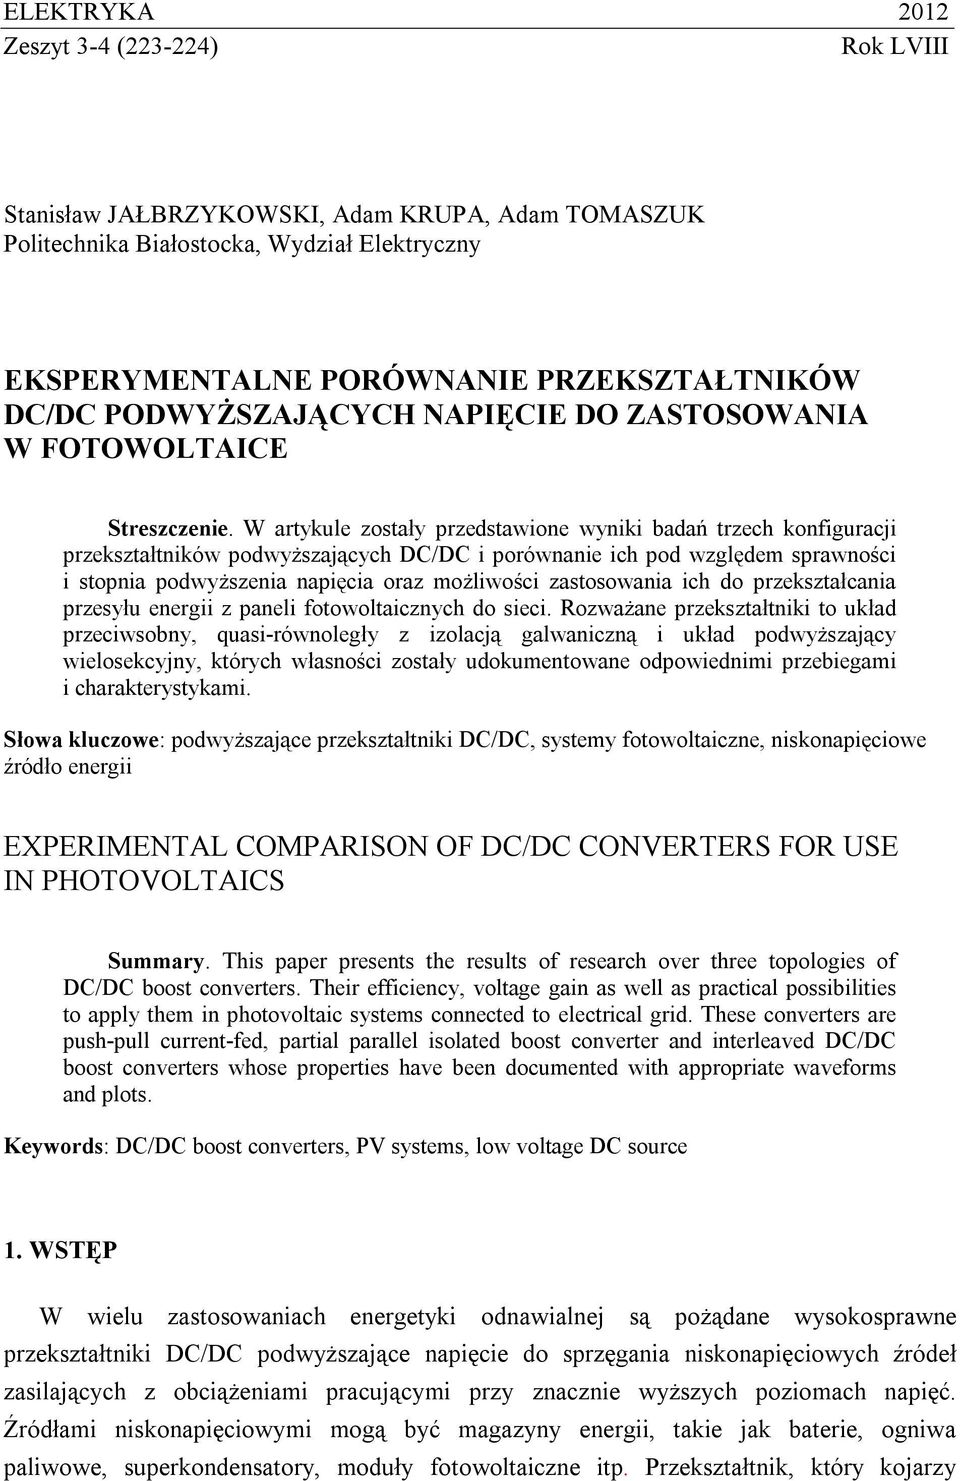 W artykule zostały przedstawione wyniki badań trzech konfiguracji przekształtników podwyższających DC/DC i porównanie ich pod względem sprawności i stopnia podwyższenia napięcia oraz możliwości